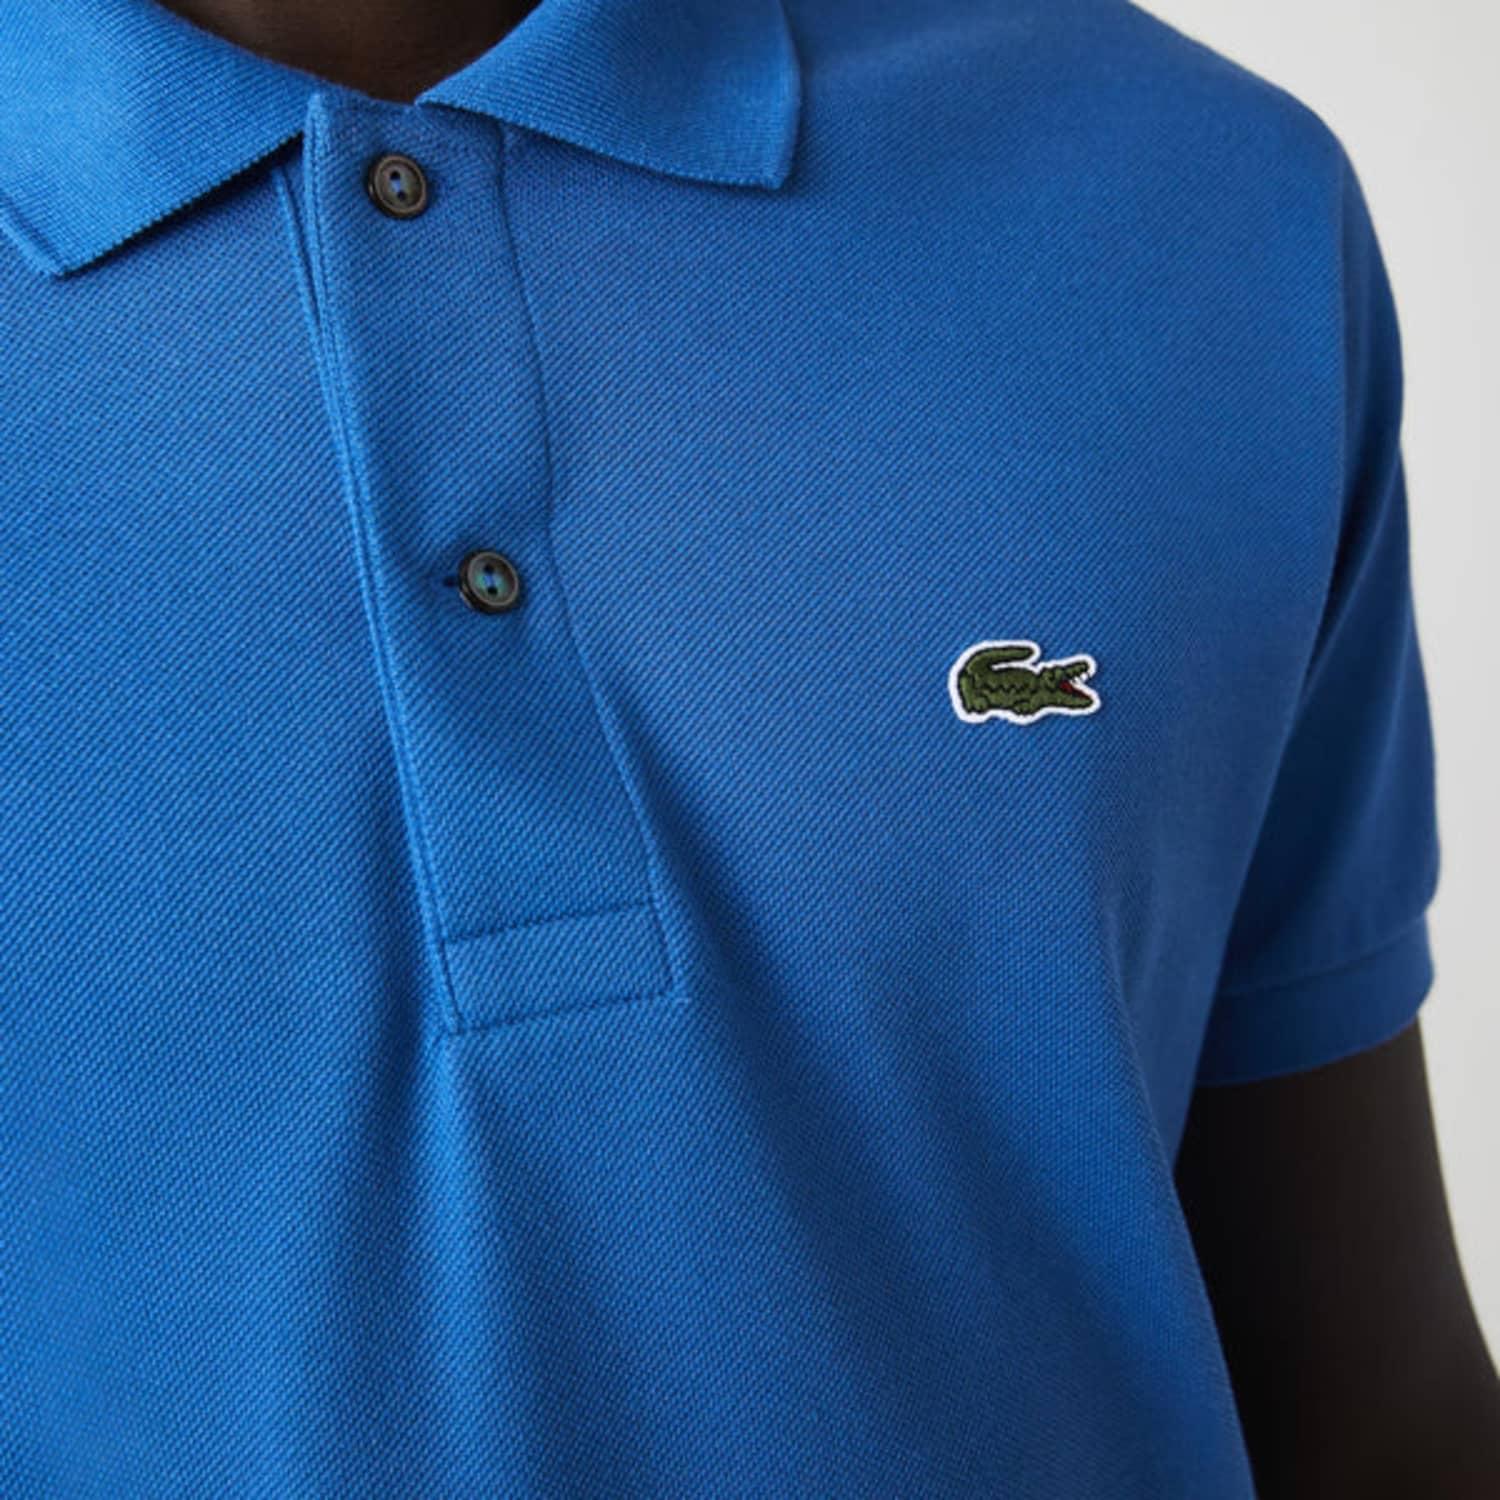 Lacoste Cotton Classic Fit L.12.12 Polo Shirt Blue • Hn8 for Men - Lyst